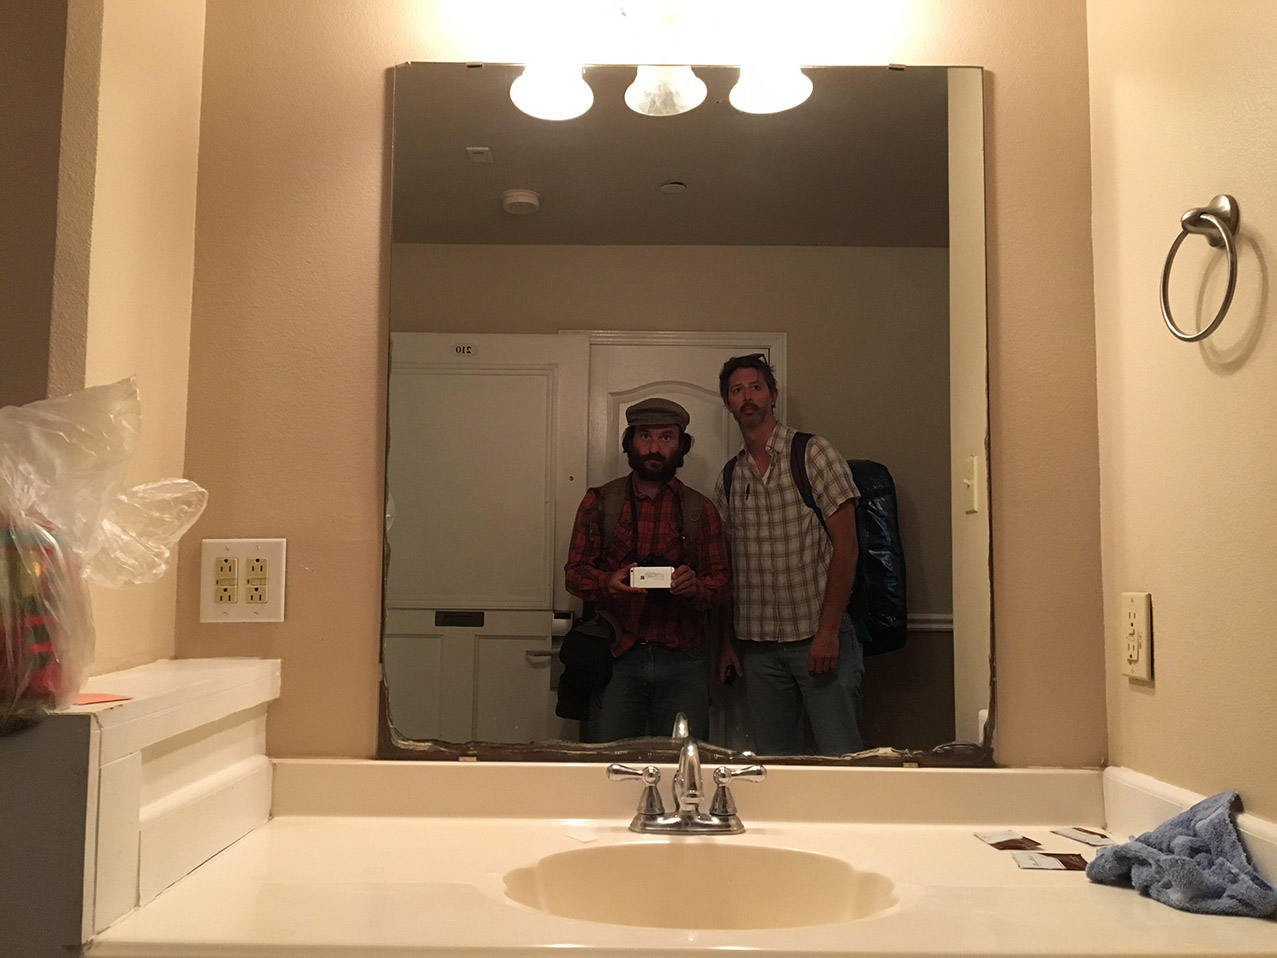  AP photographer Rodrigo Abd, left, and writer Christopher Sherman pose for a selfie inside their hotel room, March 24, 2017, Laredo, Texas. (AP Photo/Rodrigo Abd) 